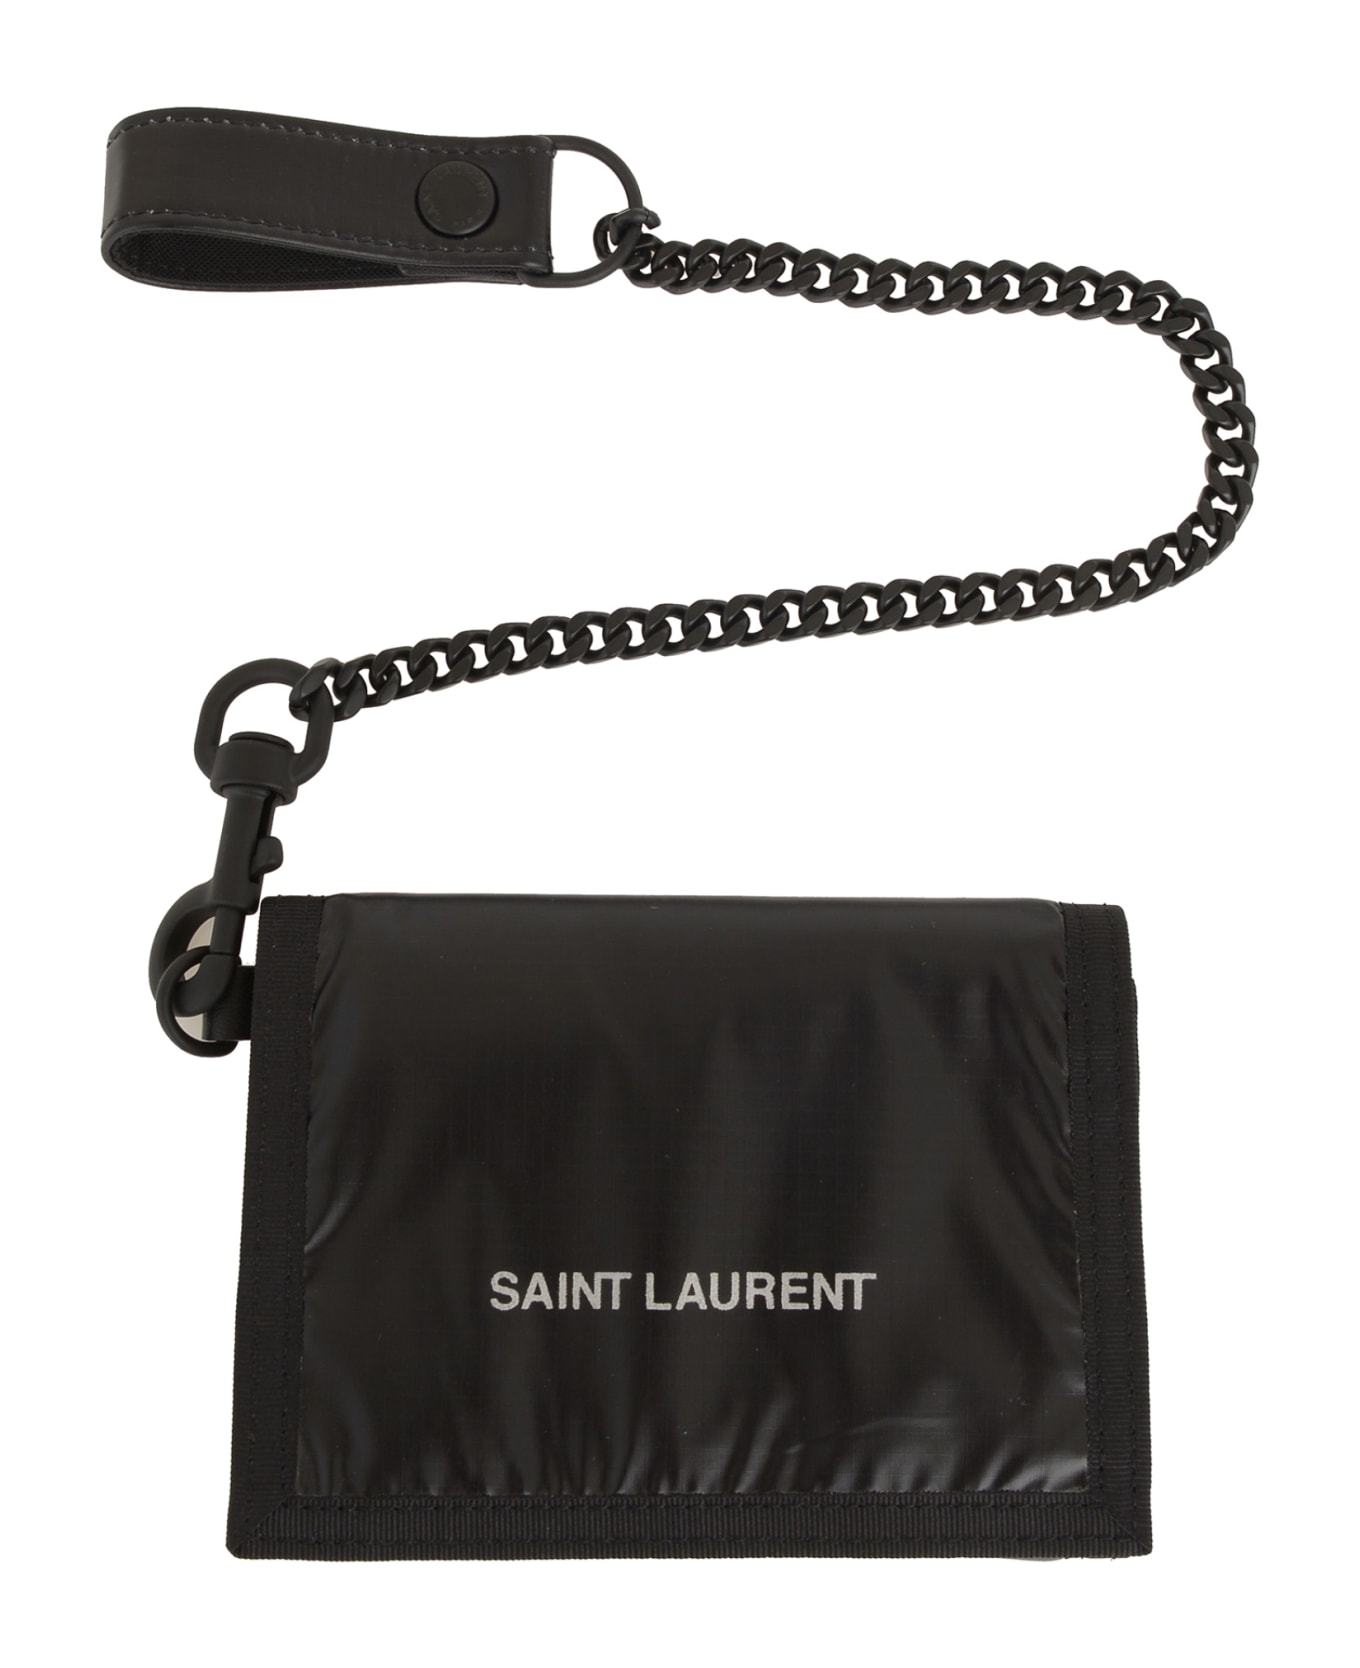 Saint Laurent Wallet - Black 財布